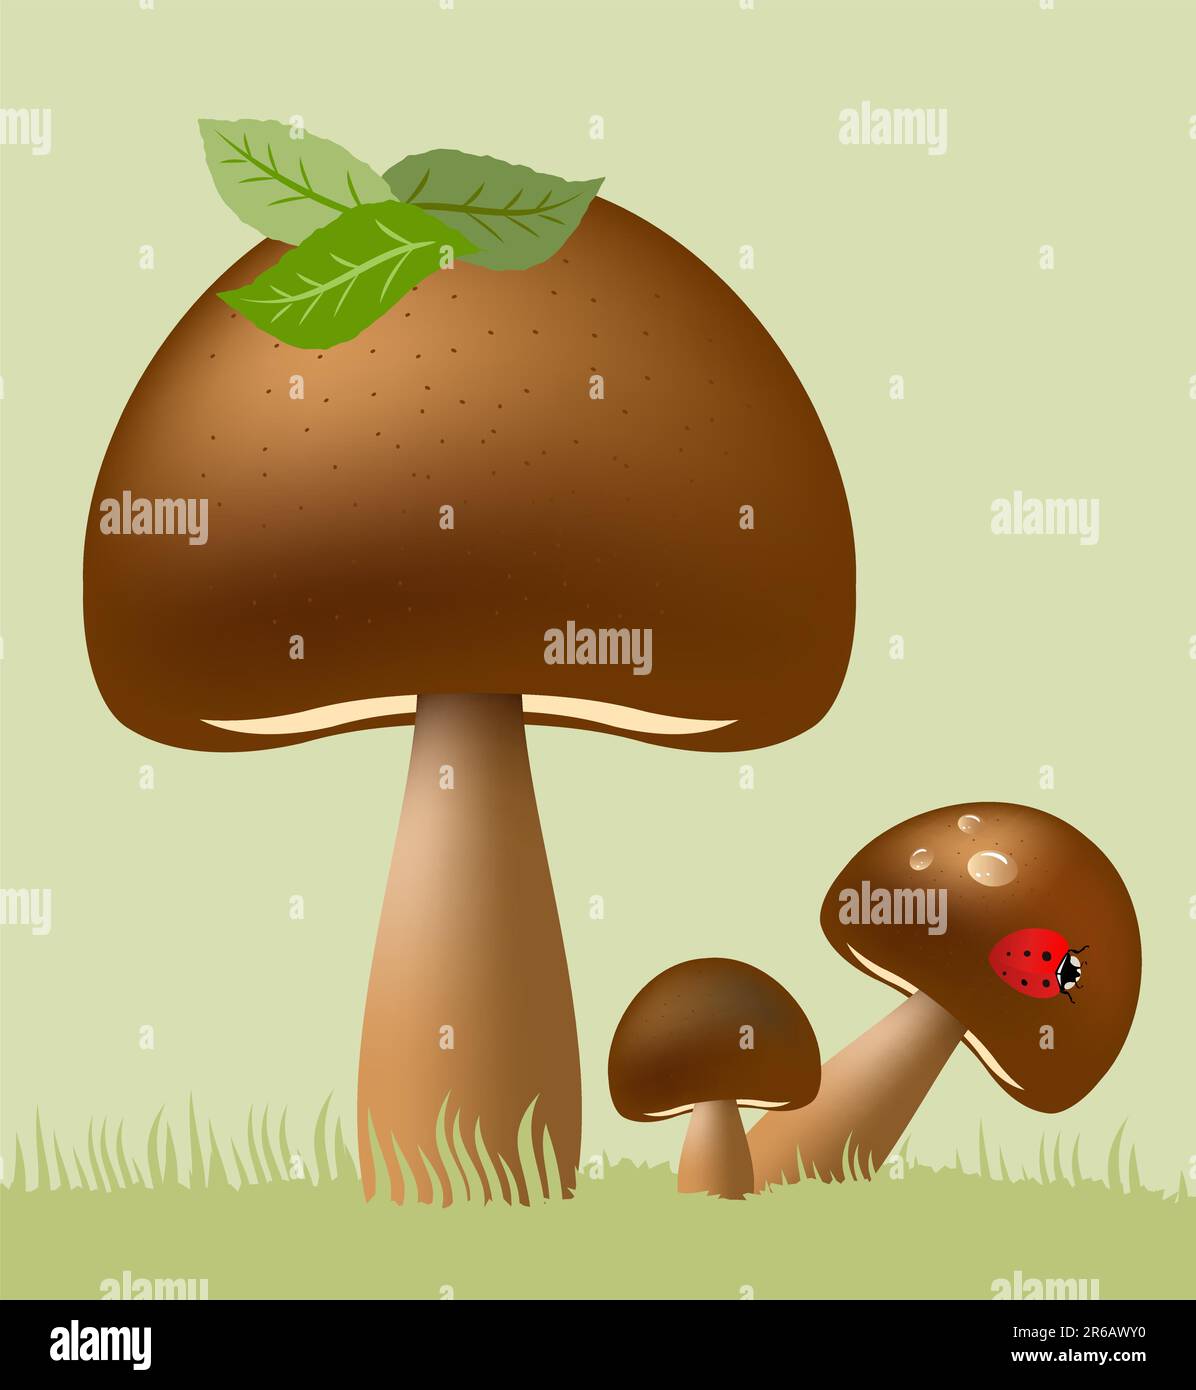 Illustrazione dei funghi commestibili vettoriali Illustrazione Vettoriale